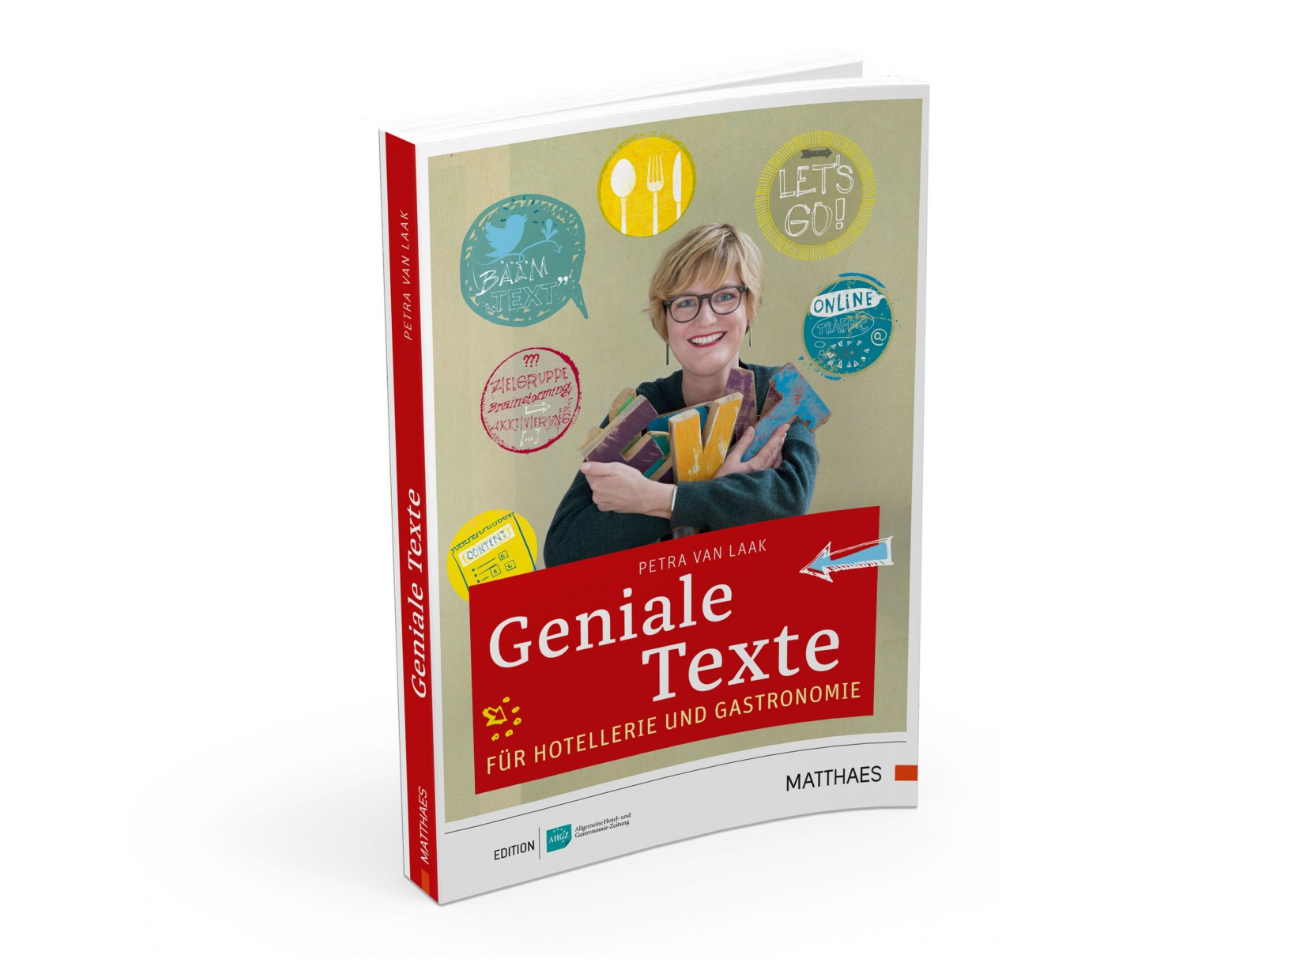 Geniale Texte für Hotellerie und Gastronomie, Petra van Laak